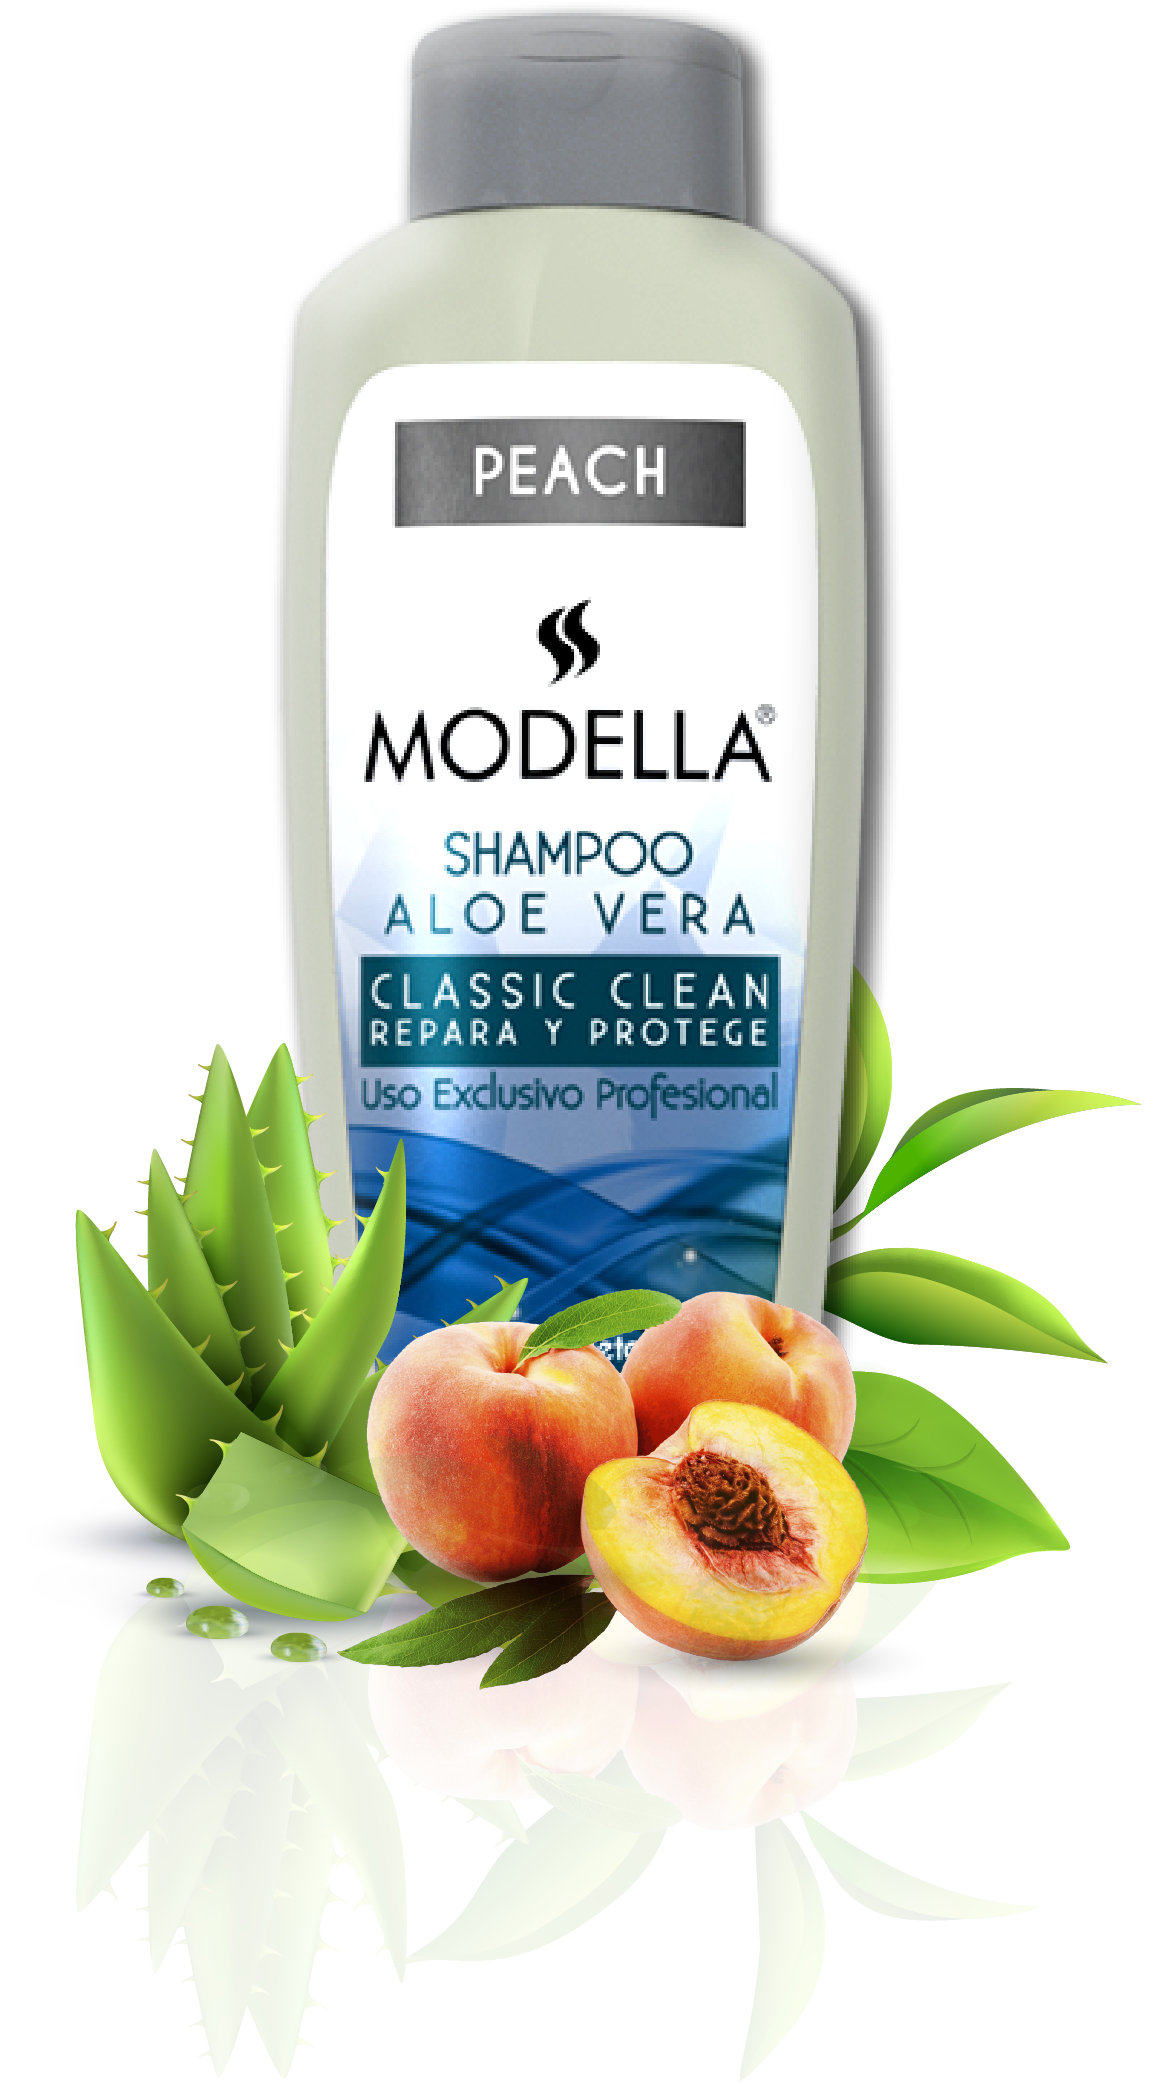 imagen-modella-shampoo-peach-aloe-vera-repara-protege-responsive